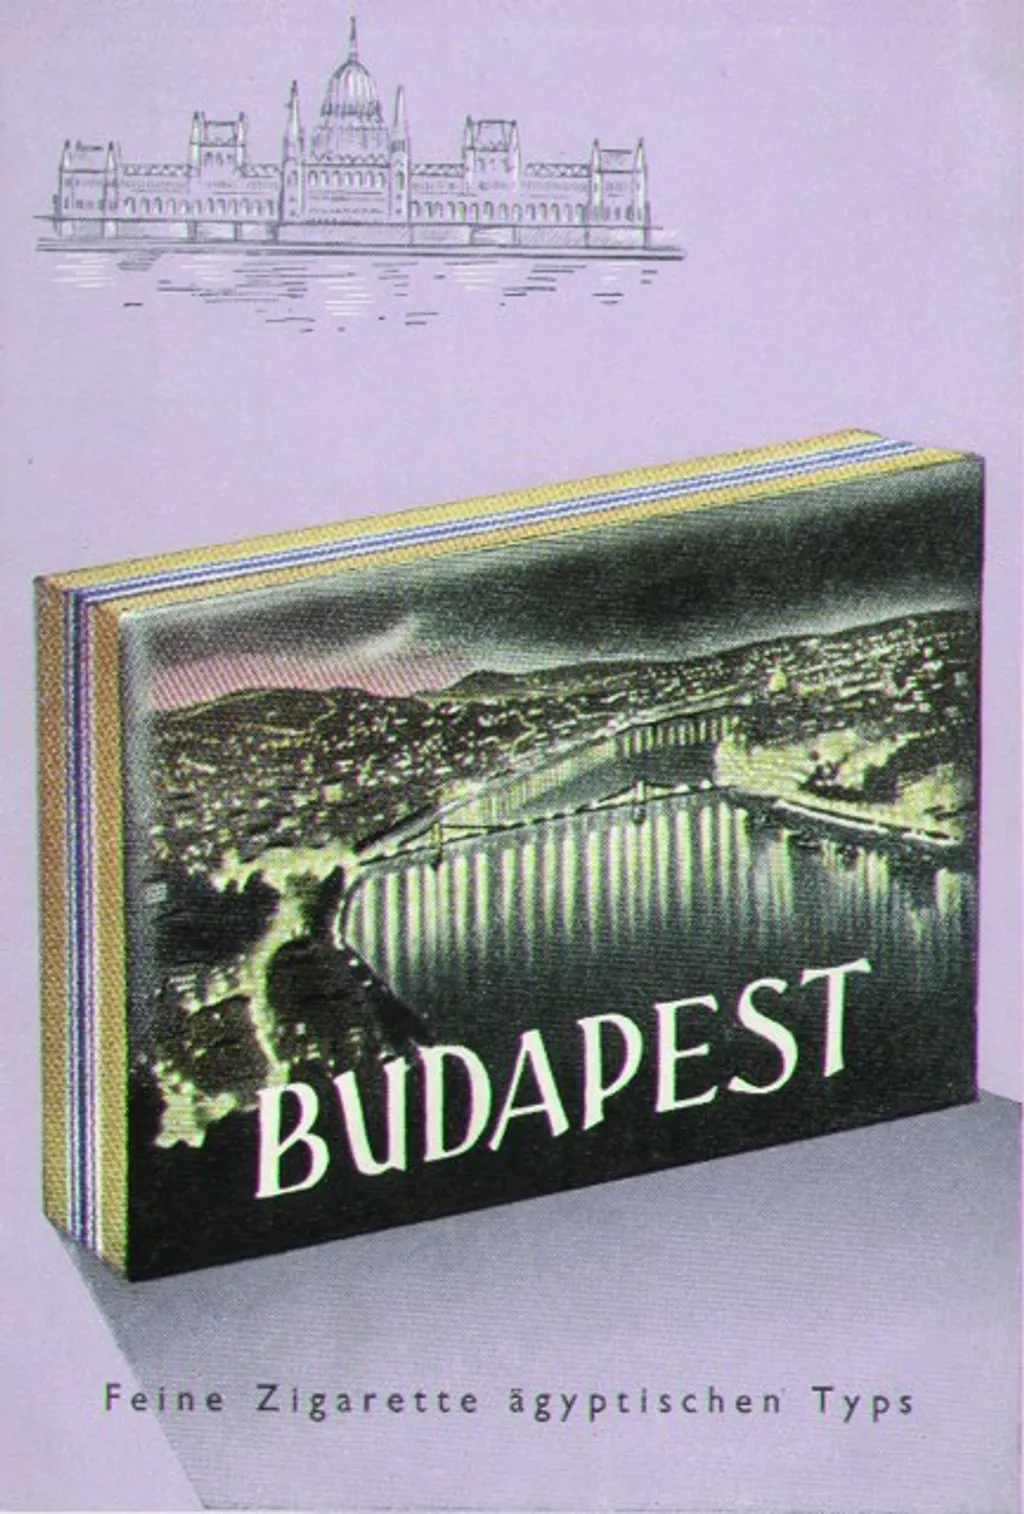 Hiánycikkek a szocialista Magyarországon (Galéria) Budapest cigaretta német levelezőlapon, ~1960. 